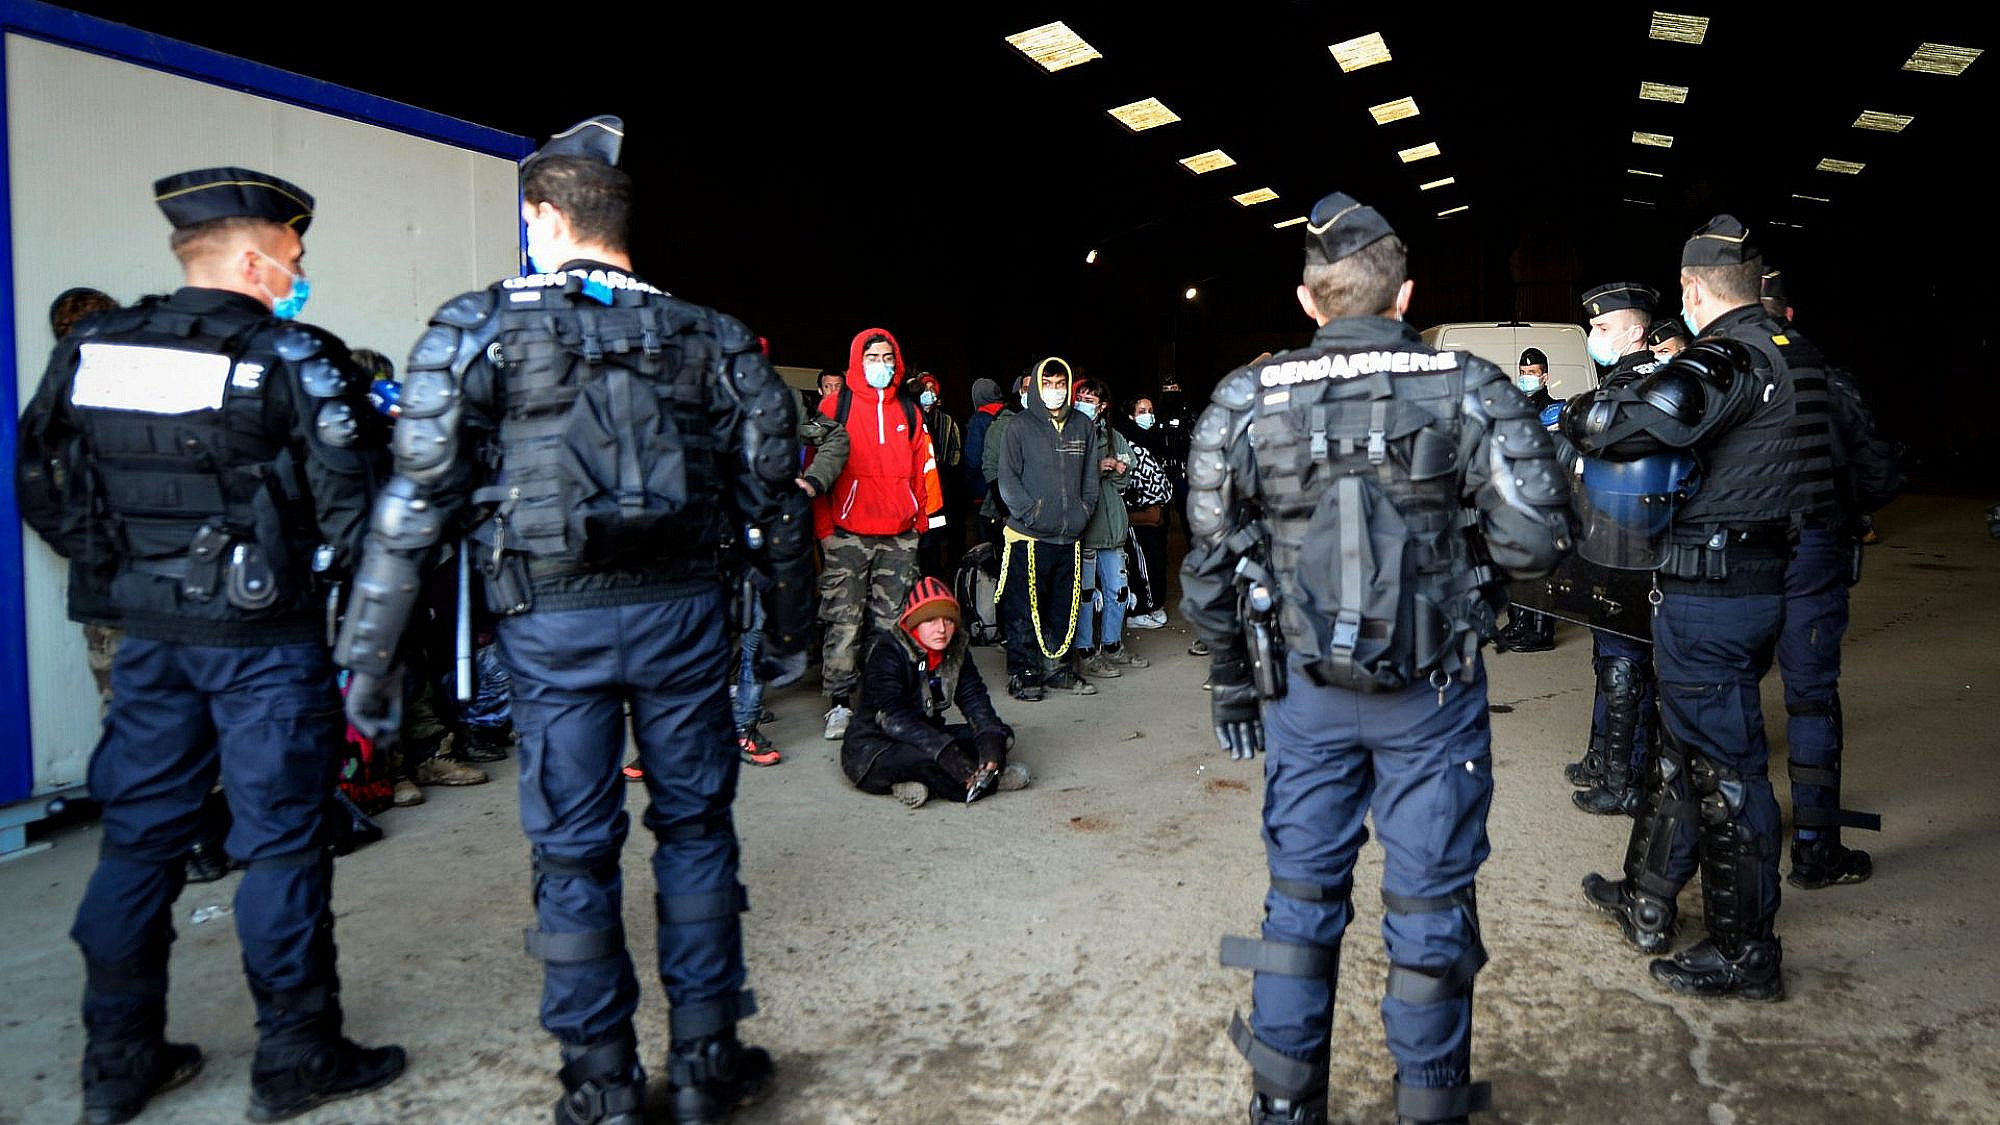 שוטרים פושטים על מסיבה לא חוקית בצרפת, ינואר 2021 (צילום: ז'אן פרנסואה מונייר\איי.אף.פי\גטי אימג'ס)